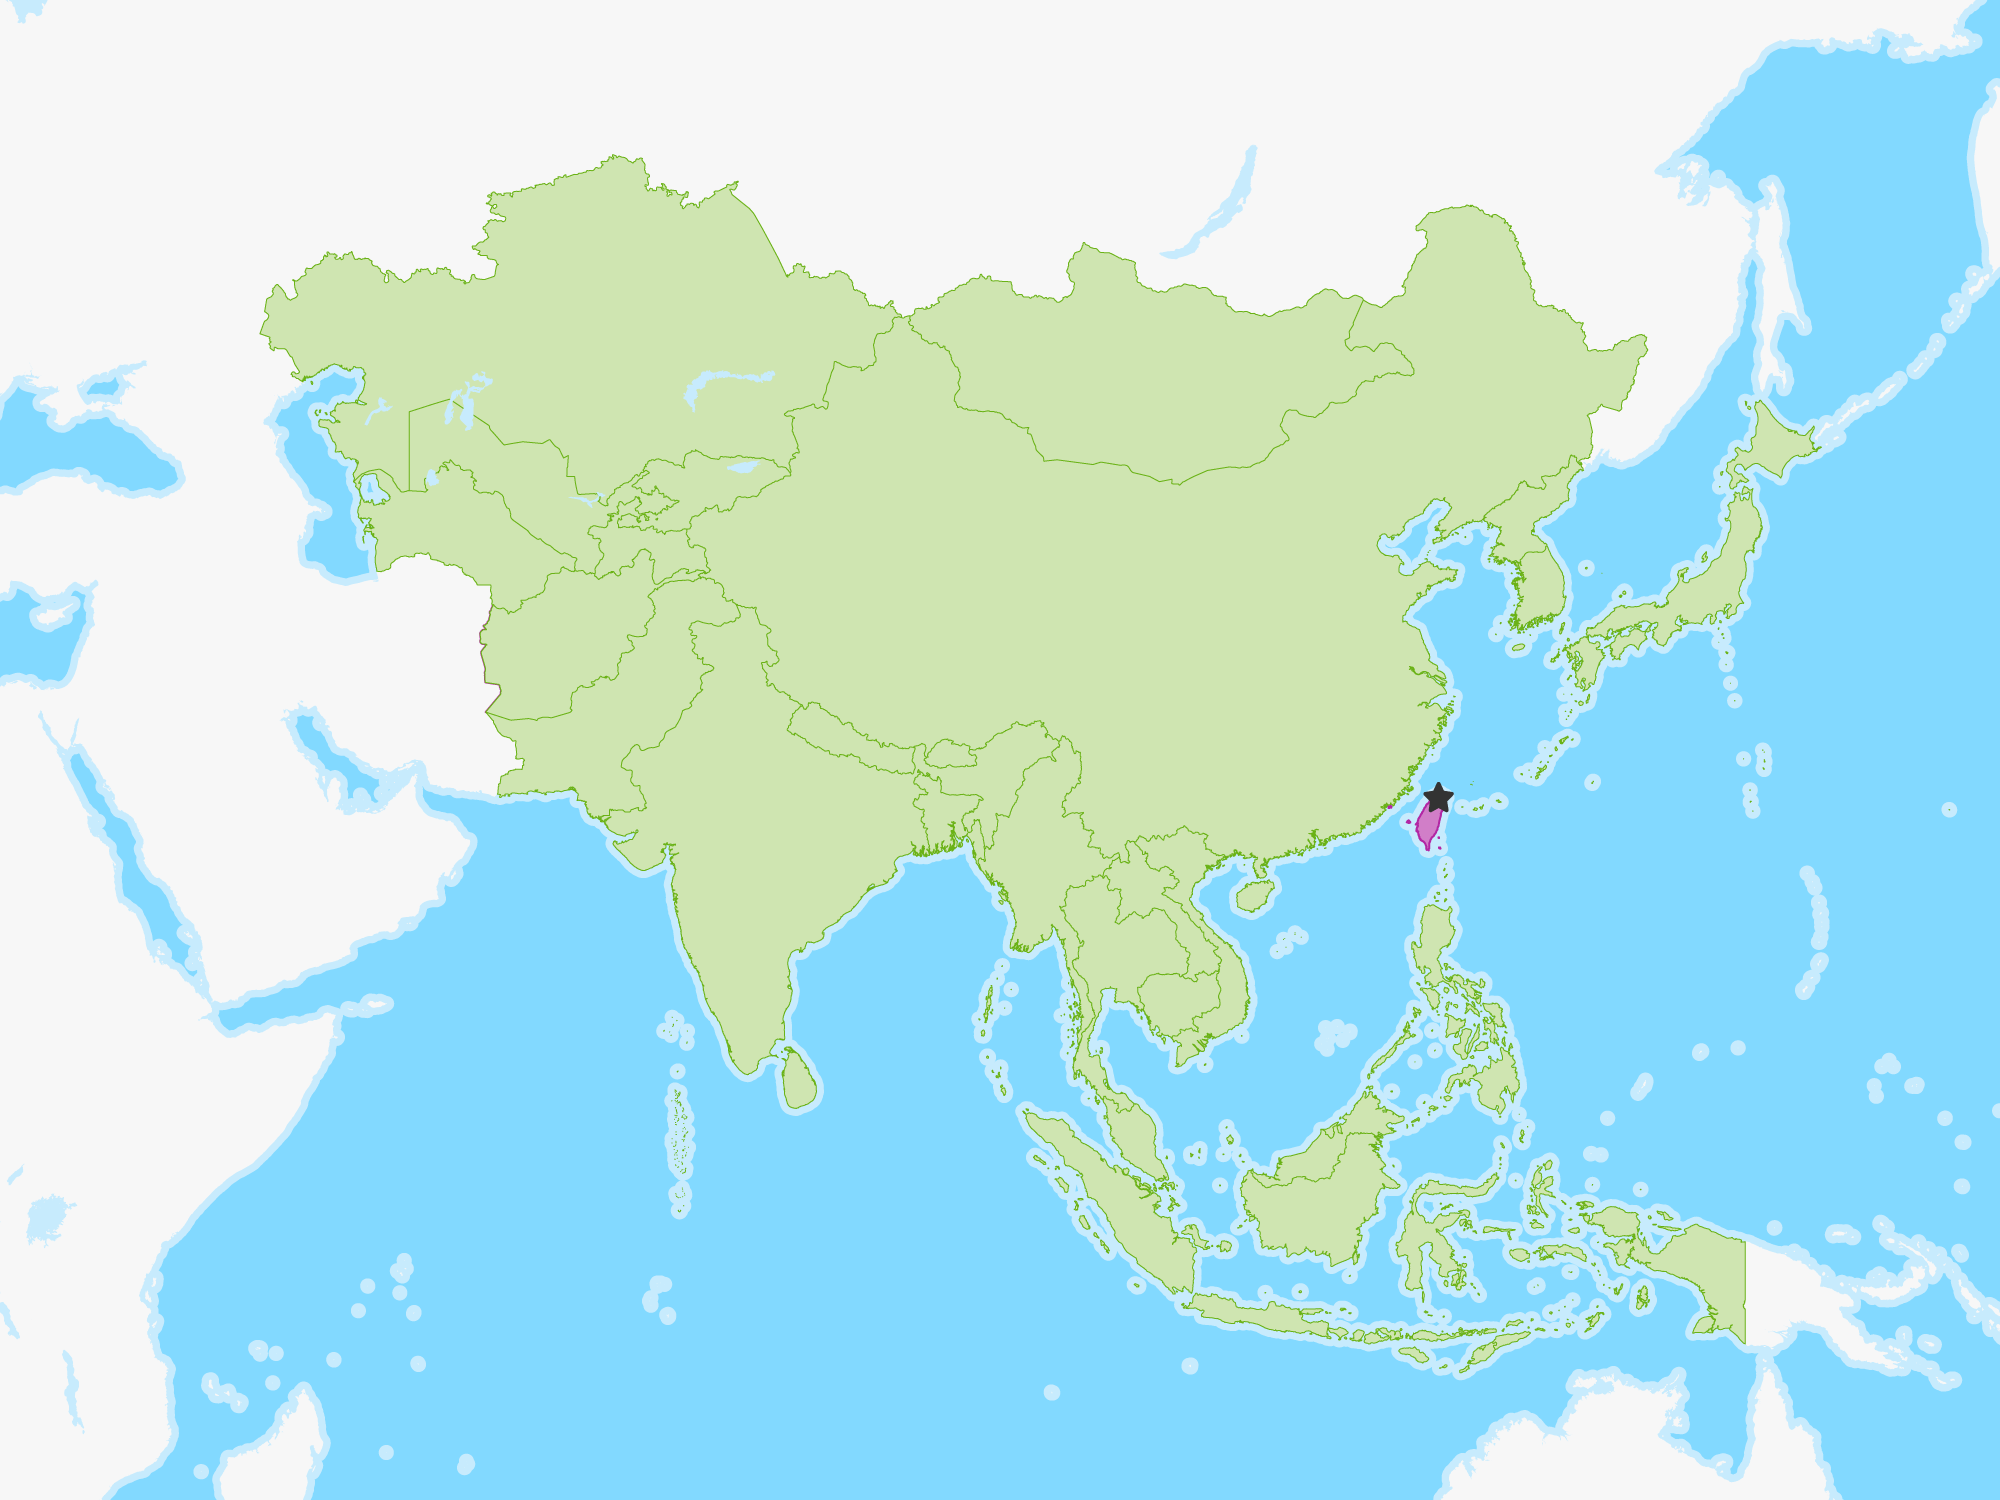 Map of Taiwan